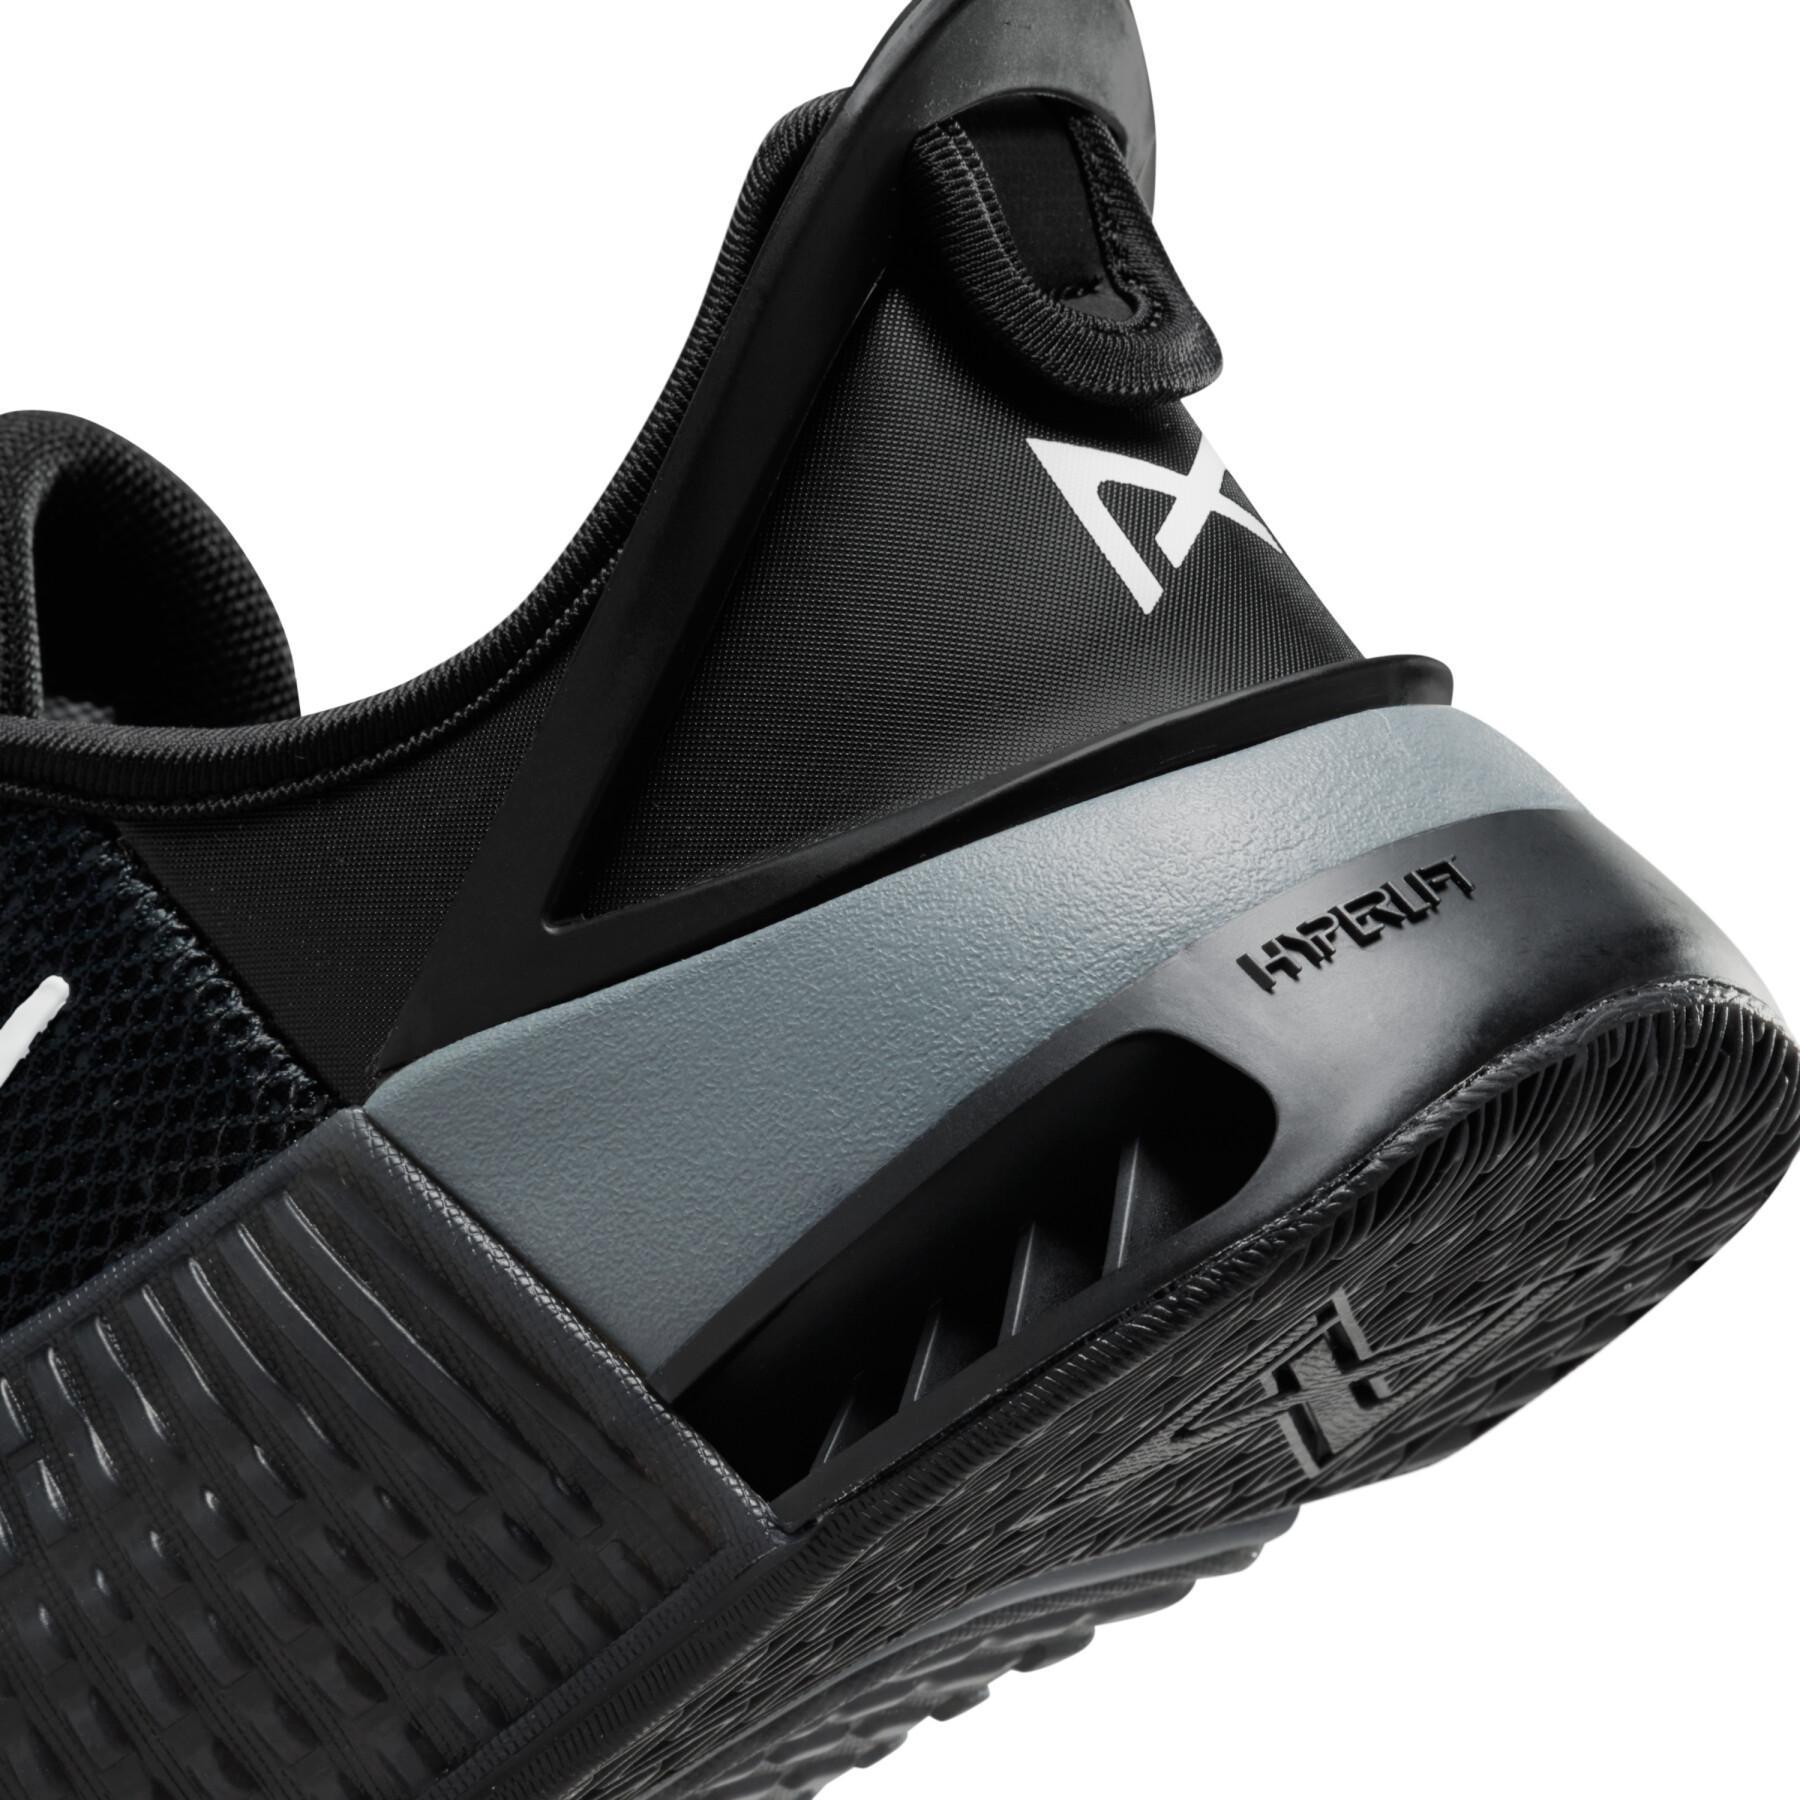 Zapatillas de entrenamiento Nike Metcon 9 FlyEase